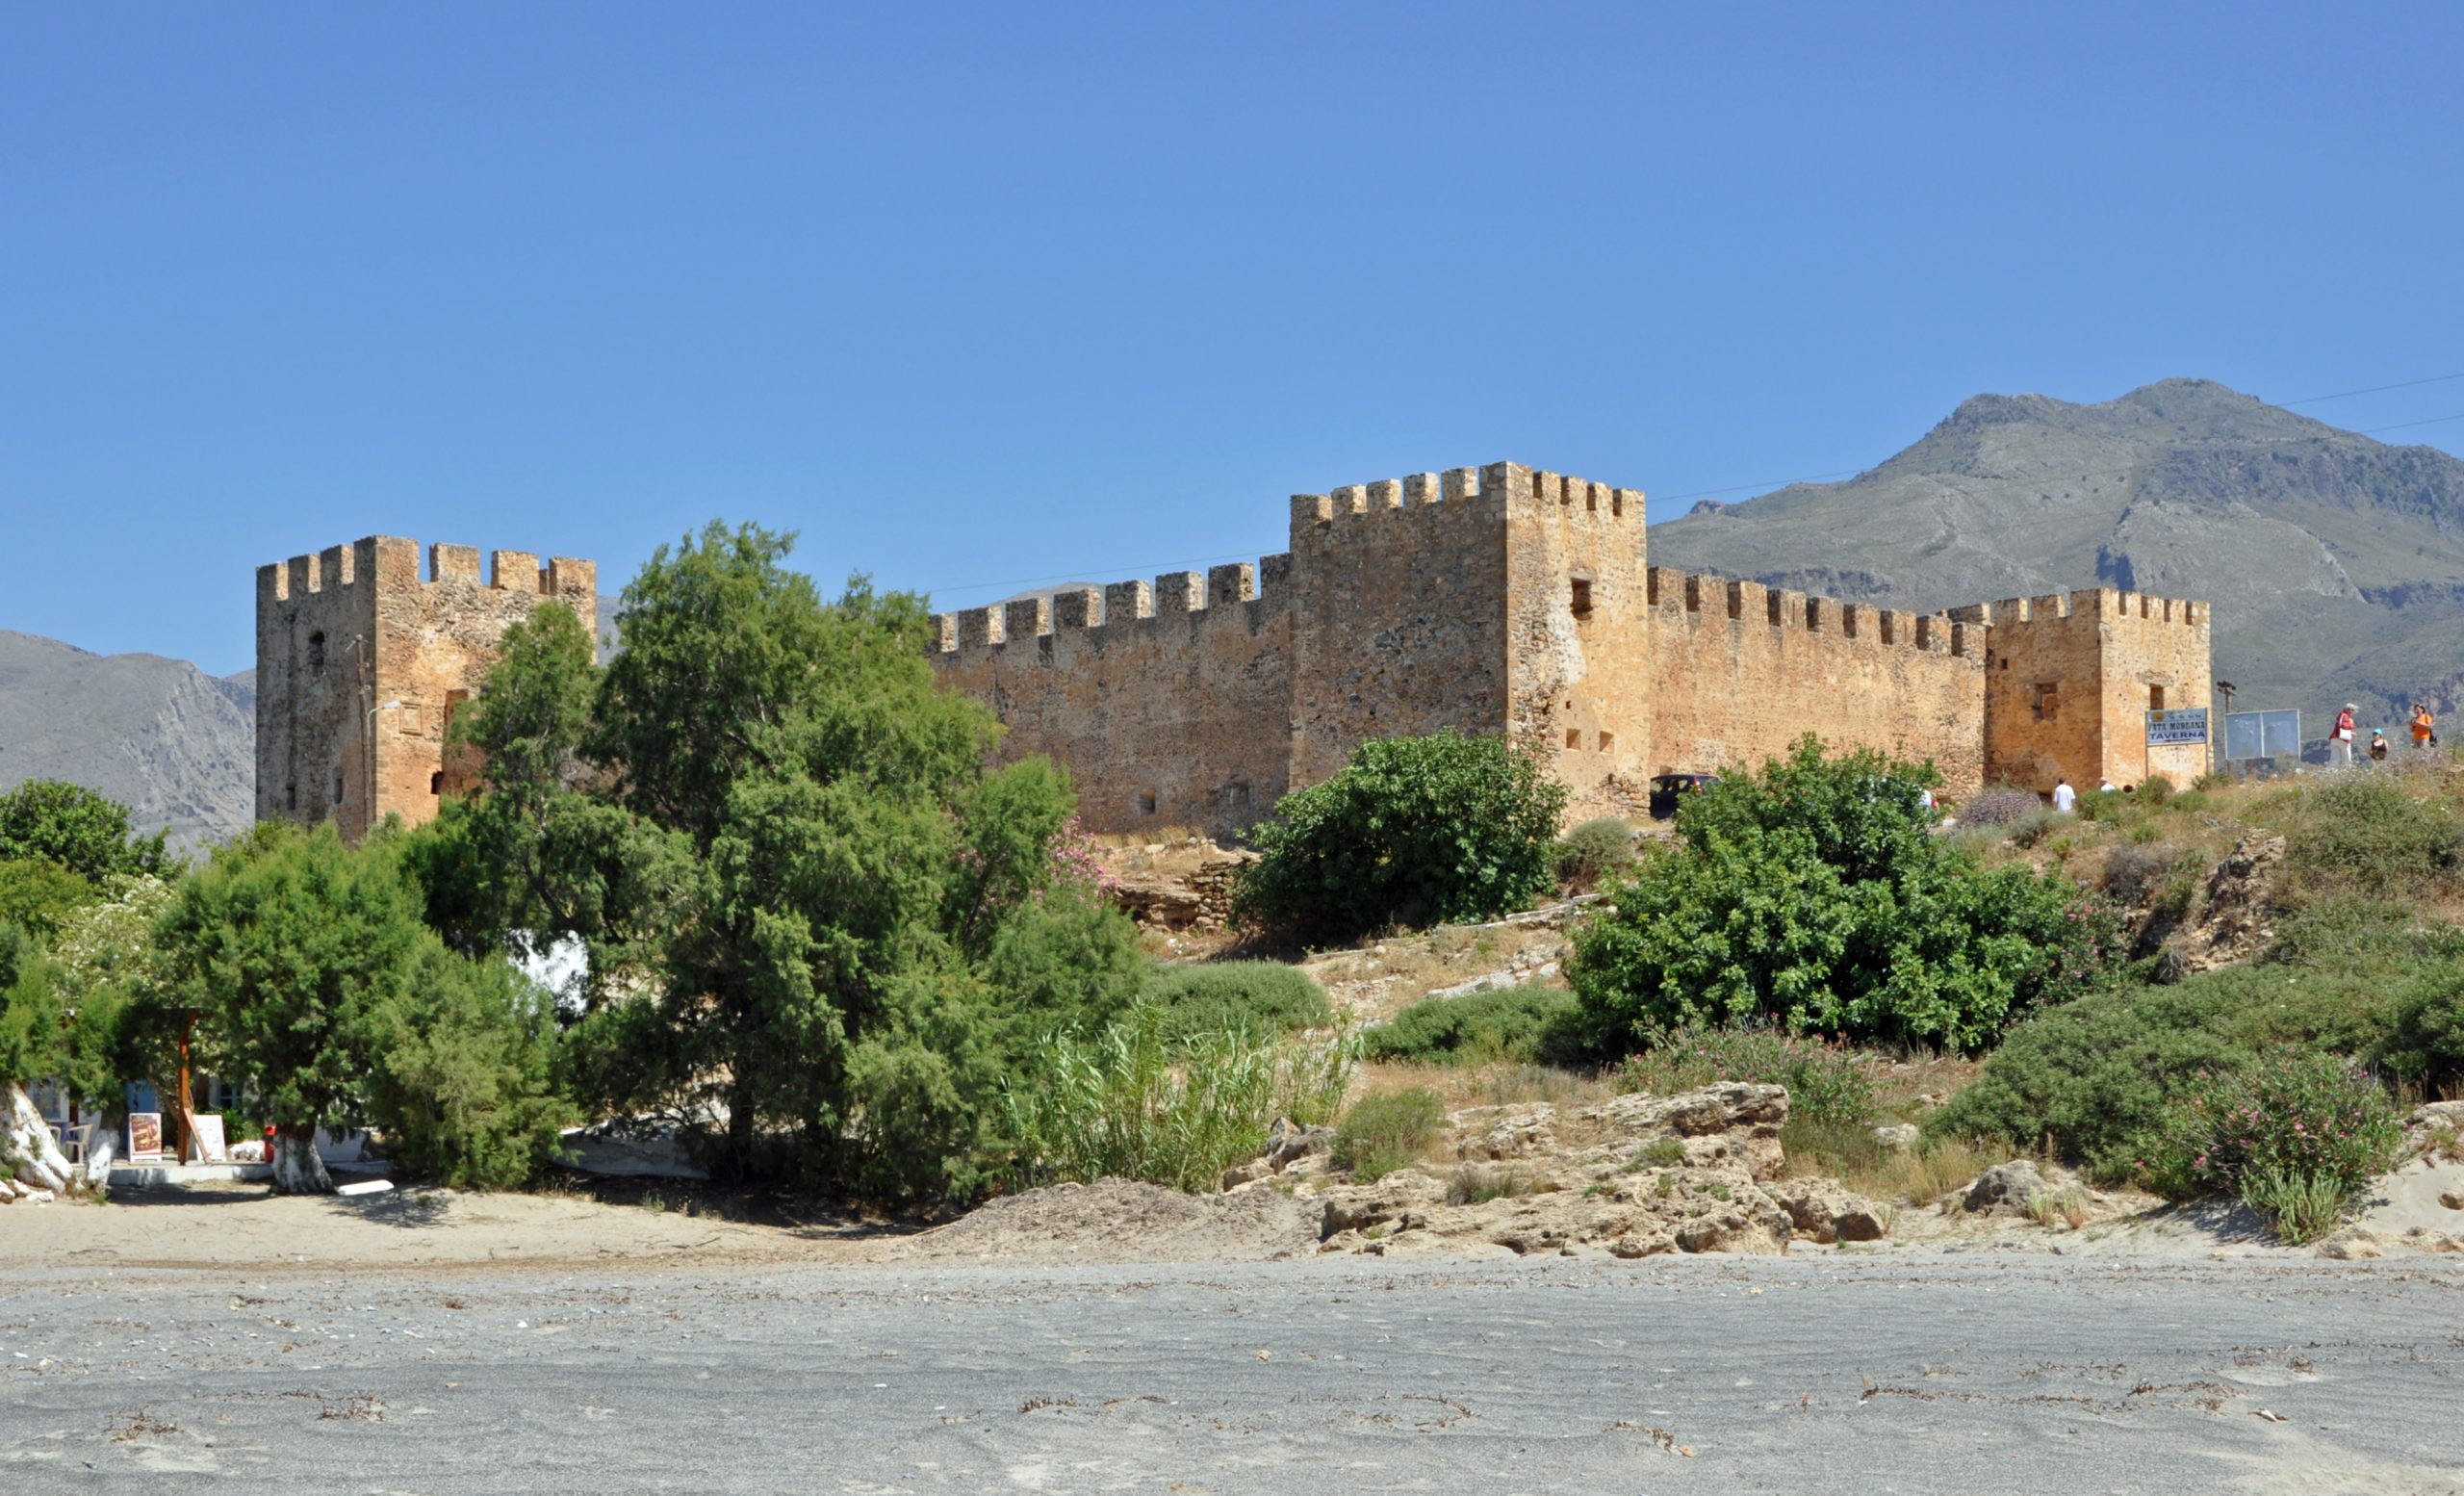 Φραγκοκάστελο: Το θρυλικό κάστρο στα Χανιά που ξεχωρίζει για την απόκοσμη αύρα του (φώτο)